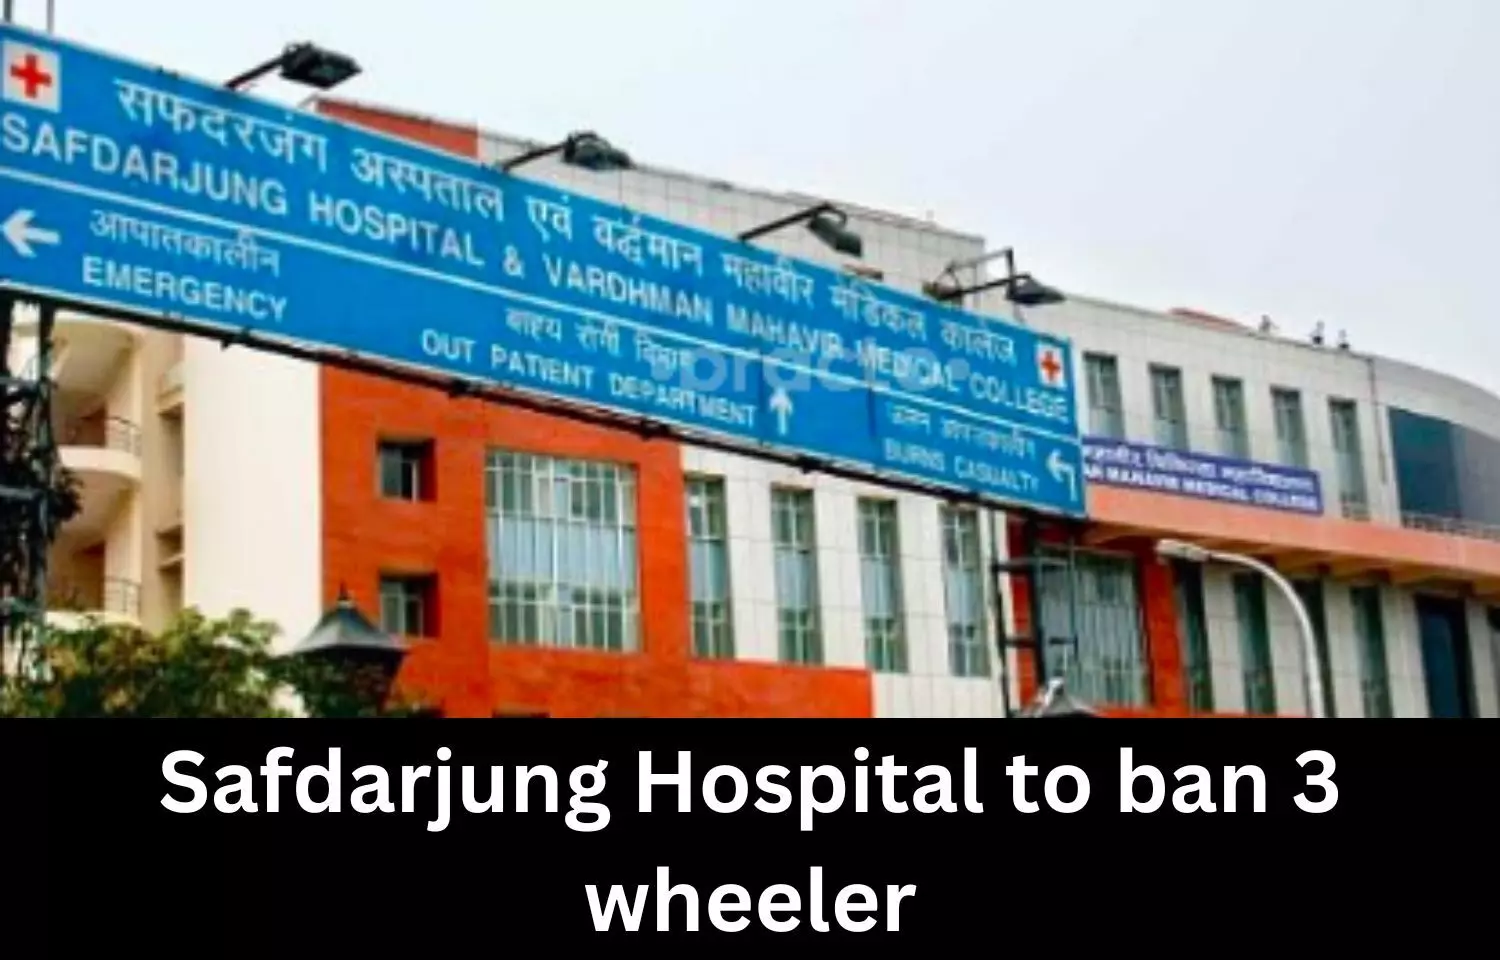 Safdarjung Hospital to ban 3 wheeler by October end